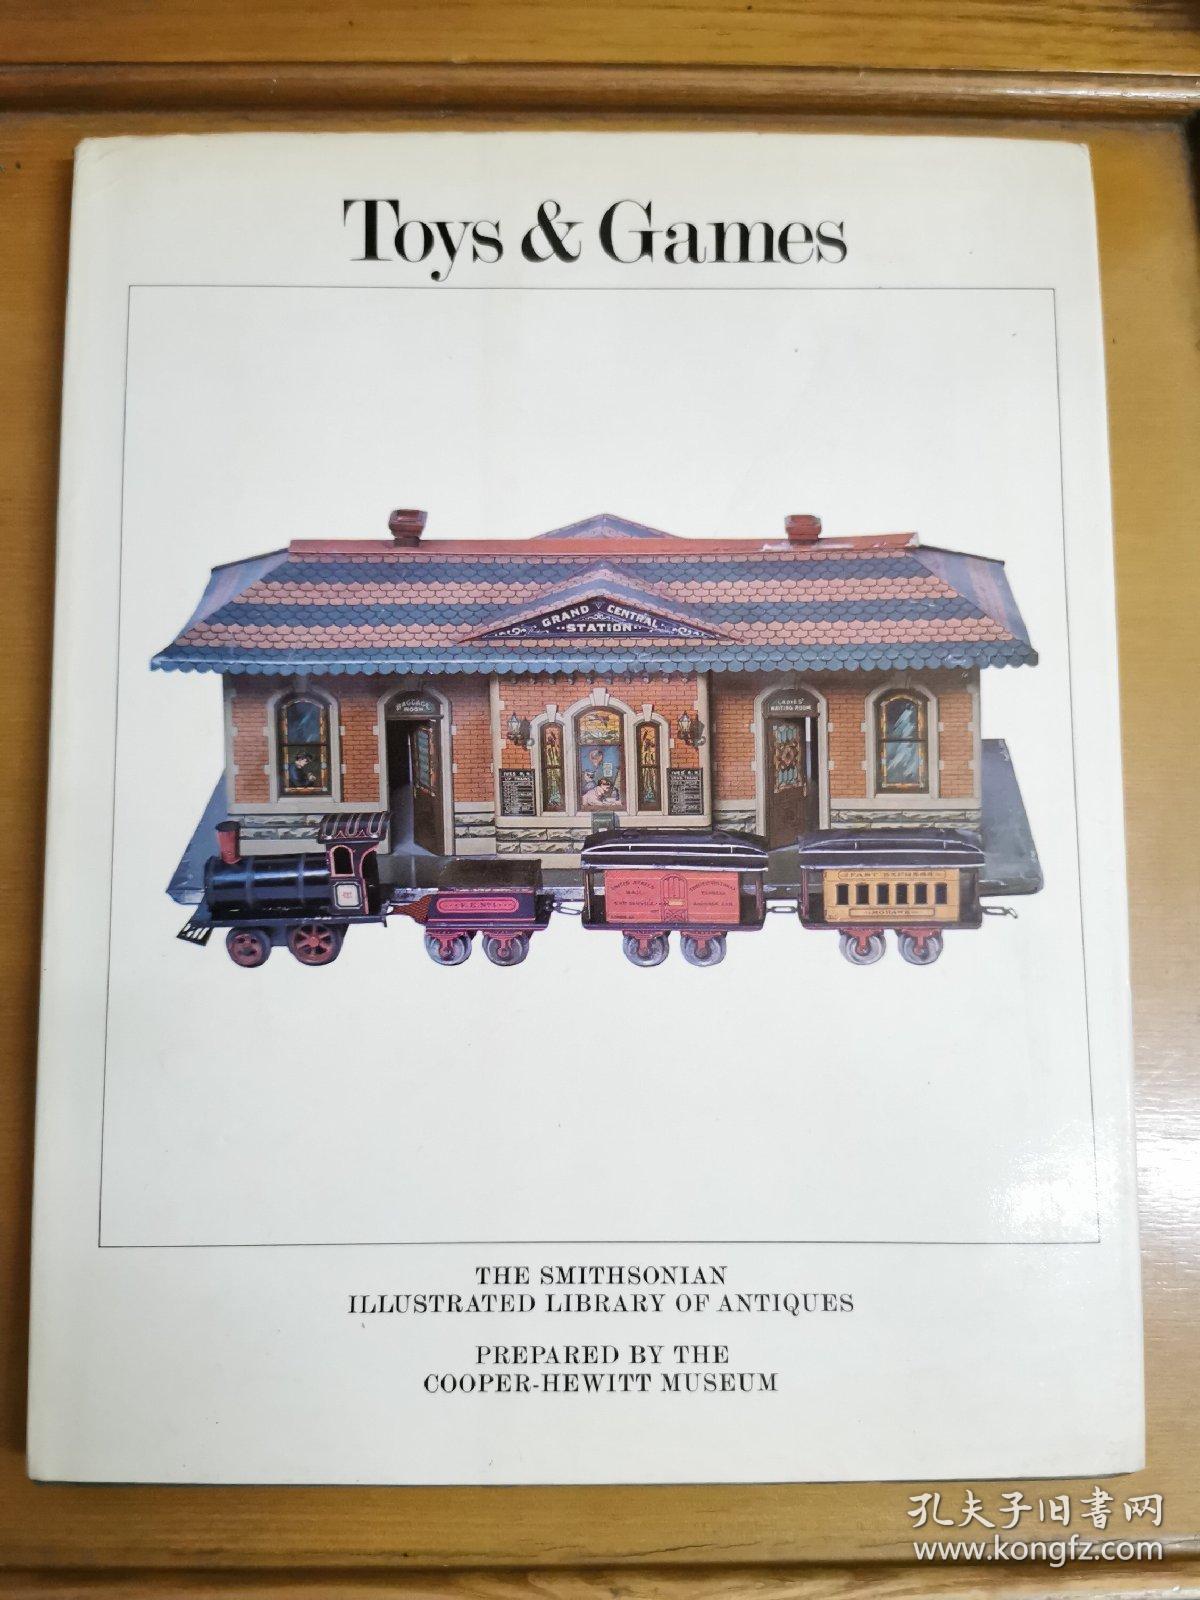 英文原版：THE SMITHSONIAN ILLUSTRATED LIBRARY OF ANTIQUES
General Editor：Brenda Gil cbr ist
Toys&Games